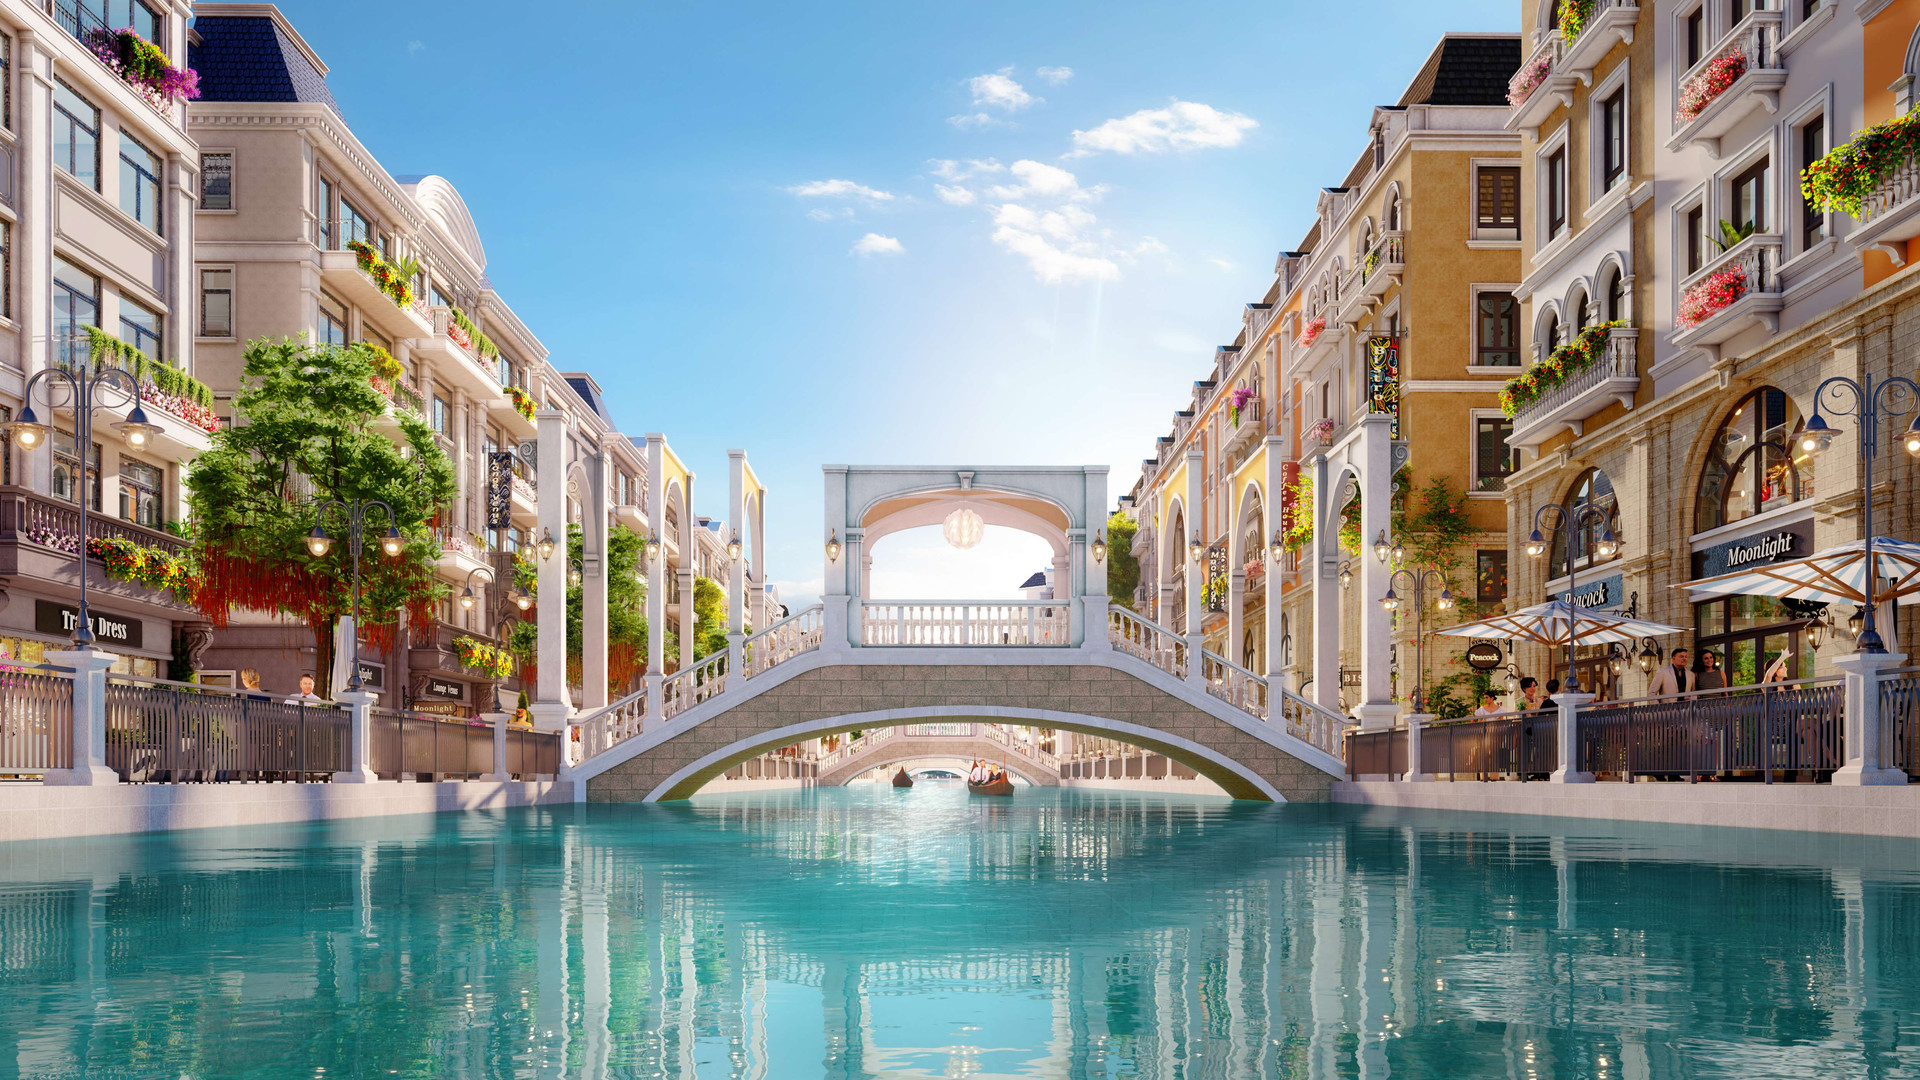 Cầu Venezia được lấy cảm hứng từ thành phố Venice xinh đẹp ở phía Bắc Italy.